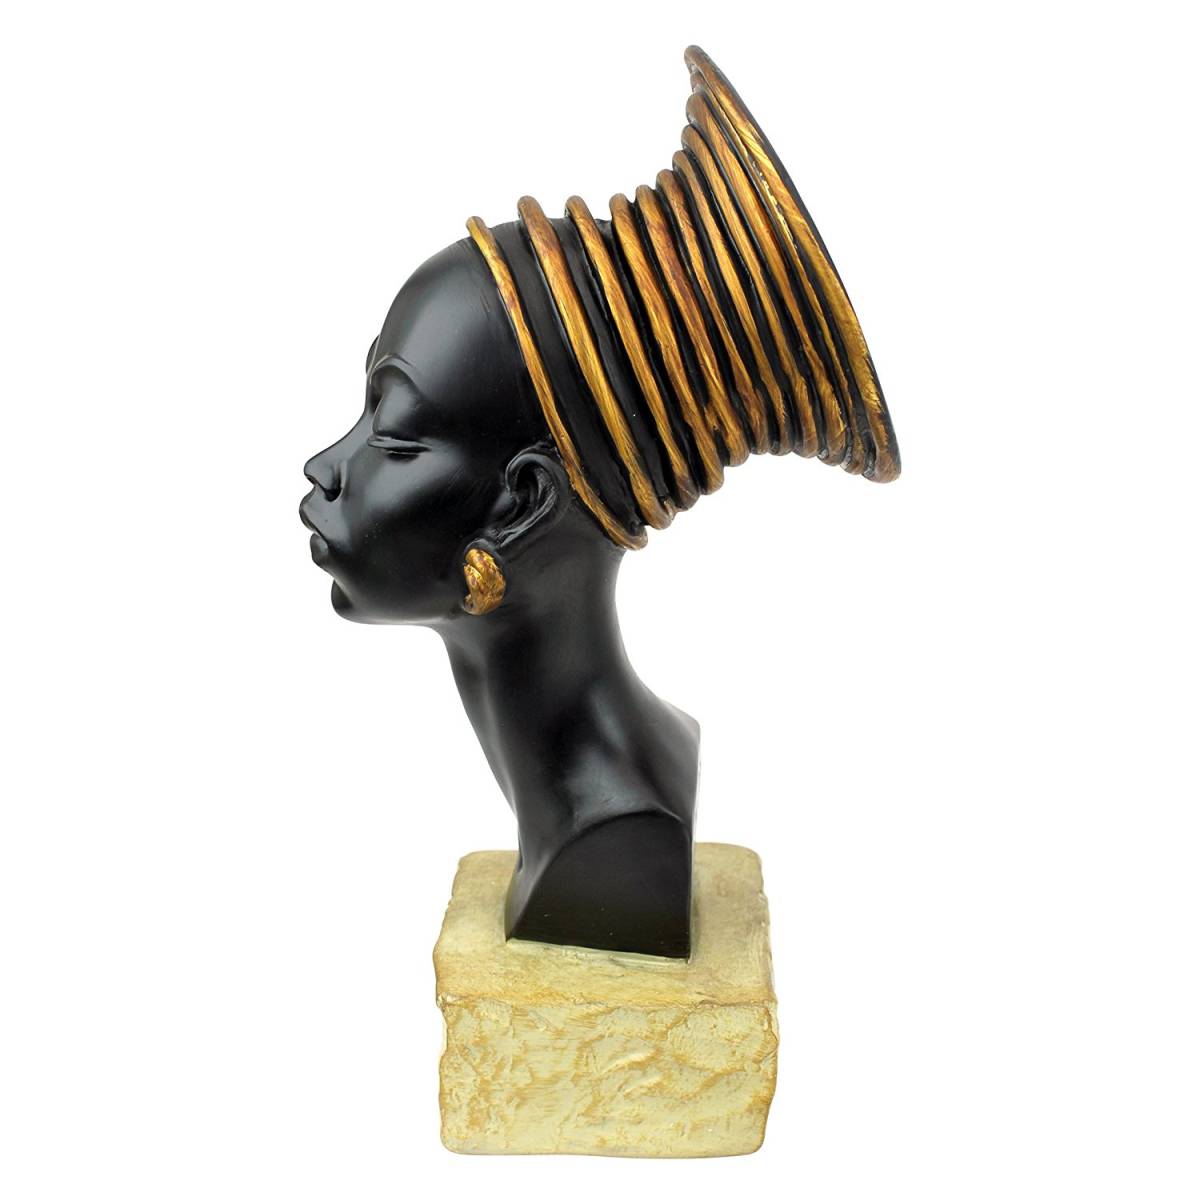 ヌビア人の女性胸像 アフリカインテリア彫刻置物オブジェ装飾品民族衣装エスニック家具女性オリエンタル雑貨調度品美術_画像2